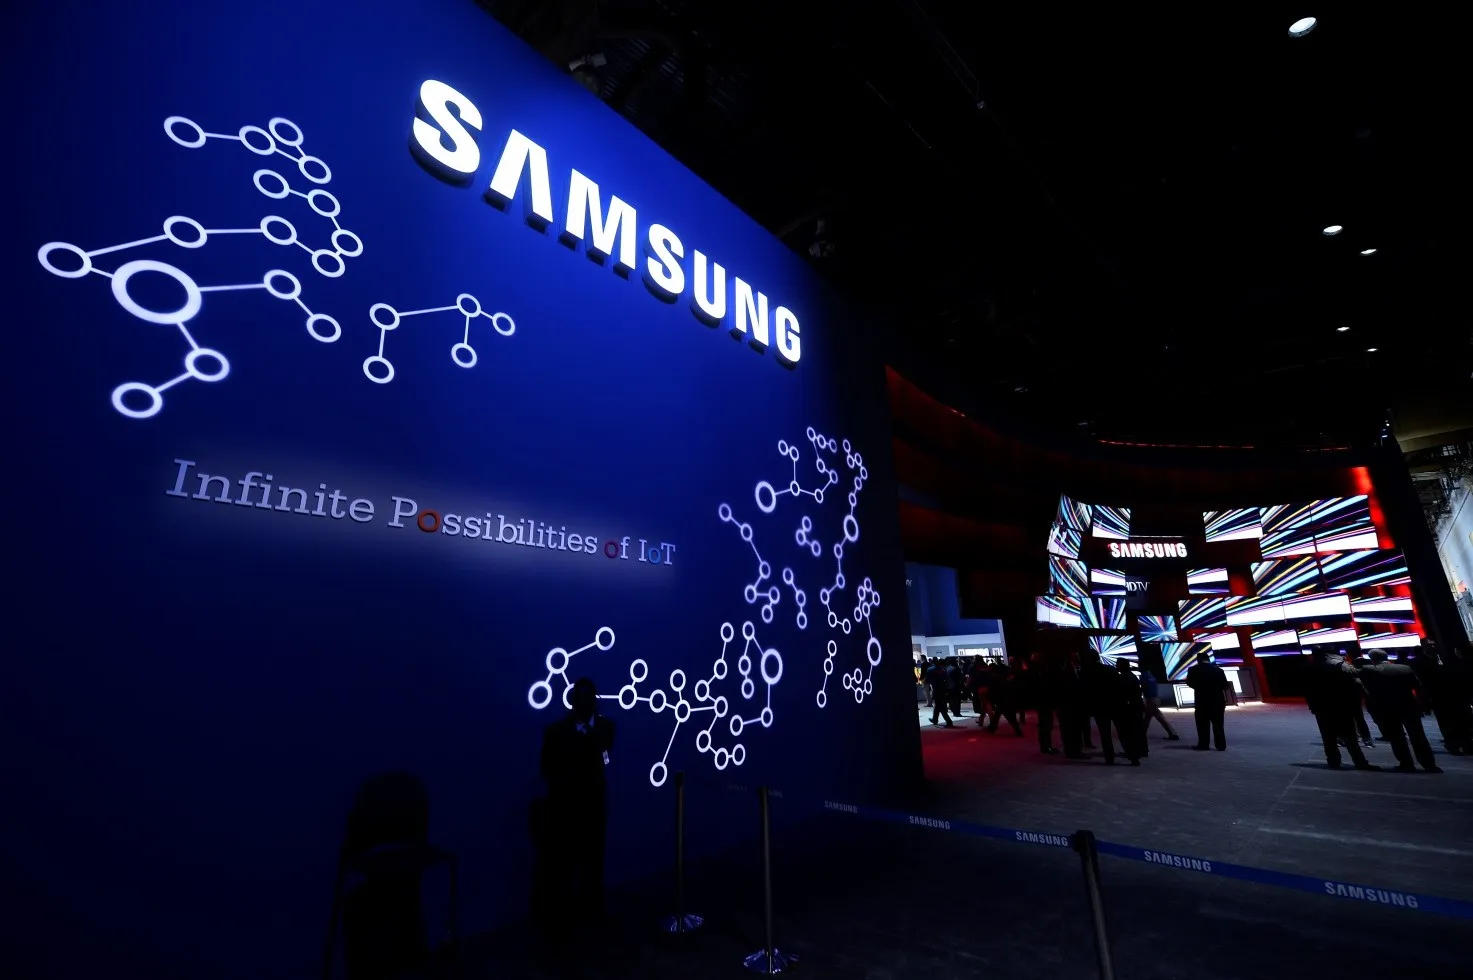 ABD’den çip üreticileri Samsung ve SK hynix’e özel istisna!